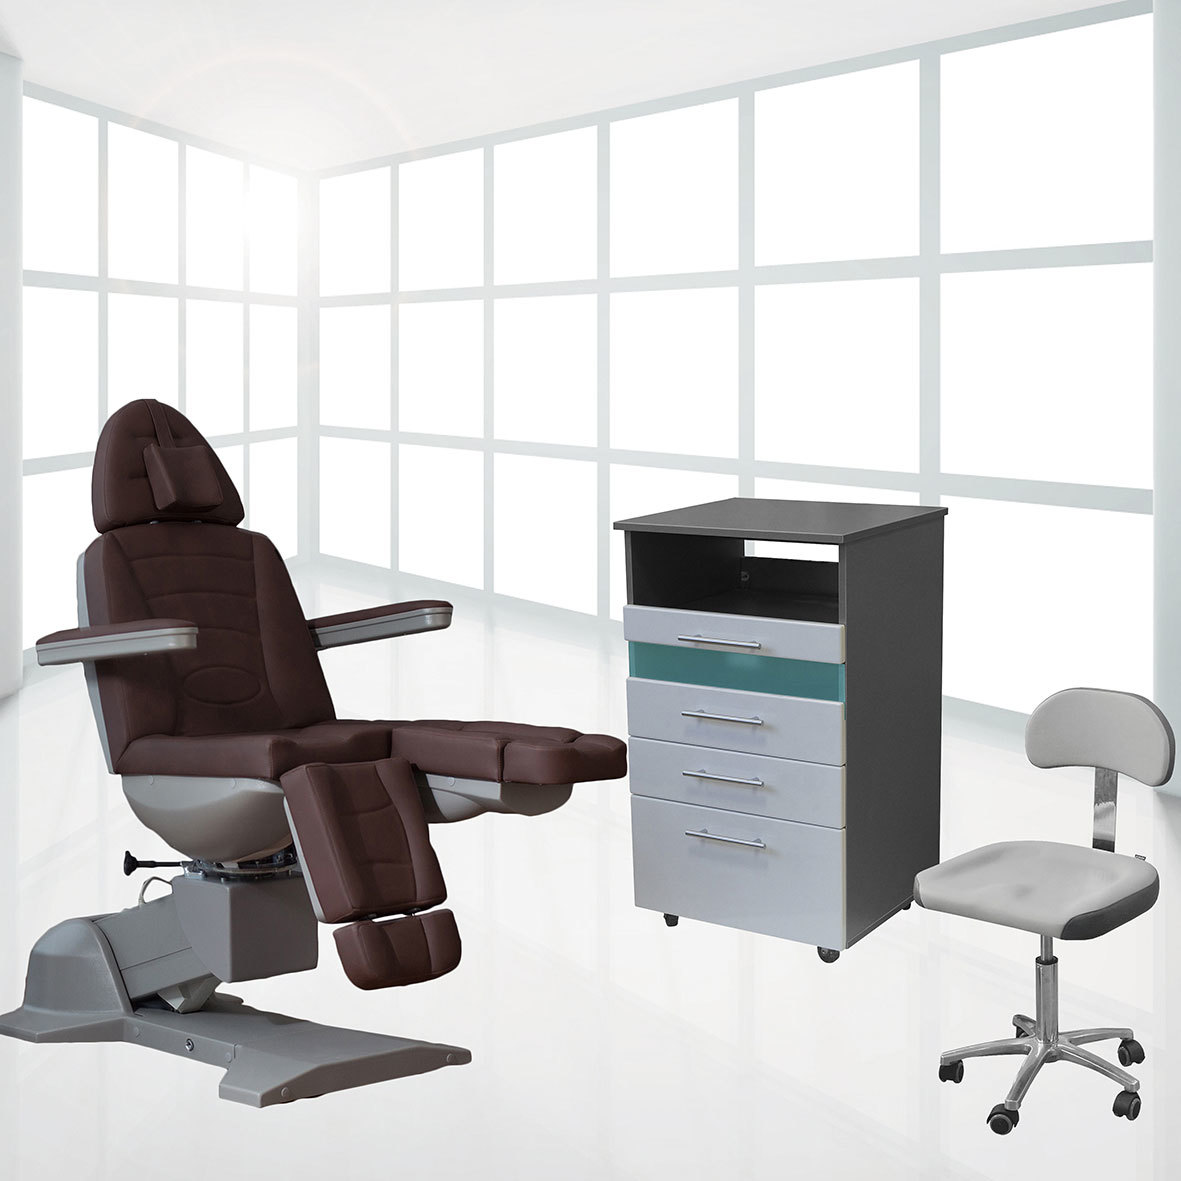 Sigma 5.0. Сигма 5 кресло педикюрное. Сигма 5,0 кресло. Мебель для педикюрного кабинета. Оснащение педикюрного кабинета.